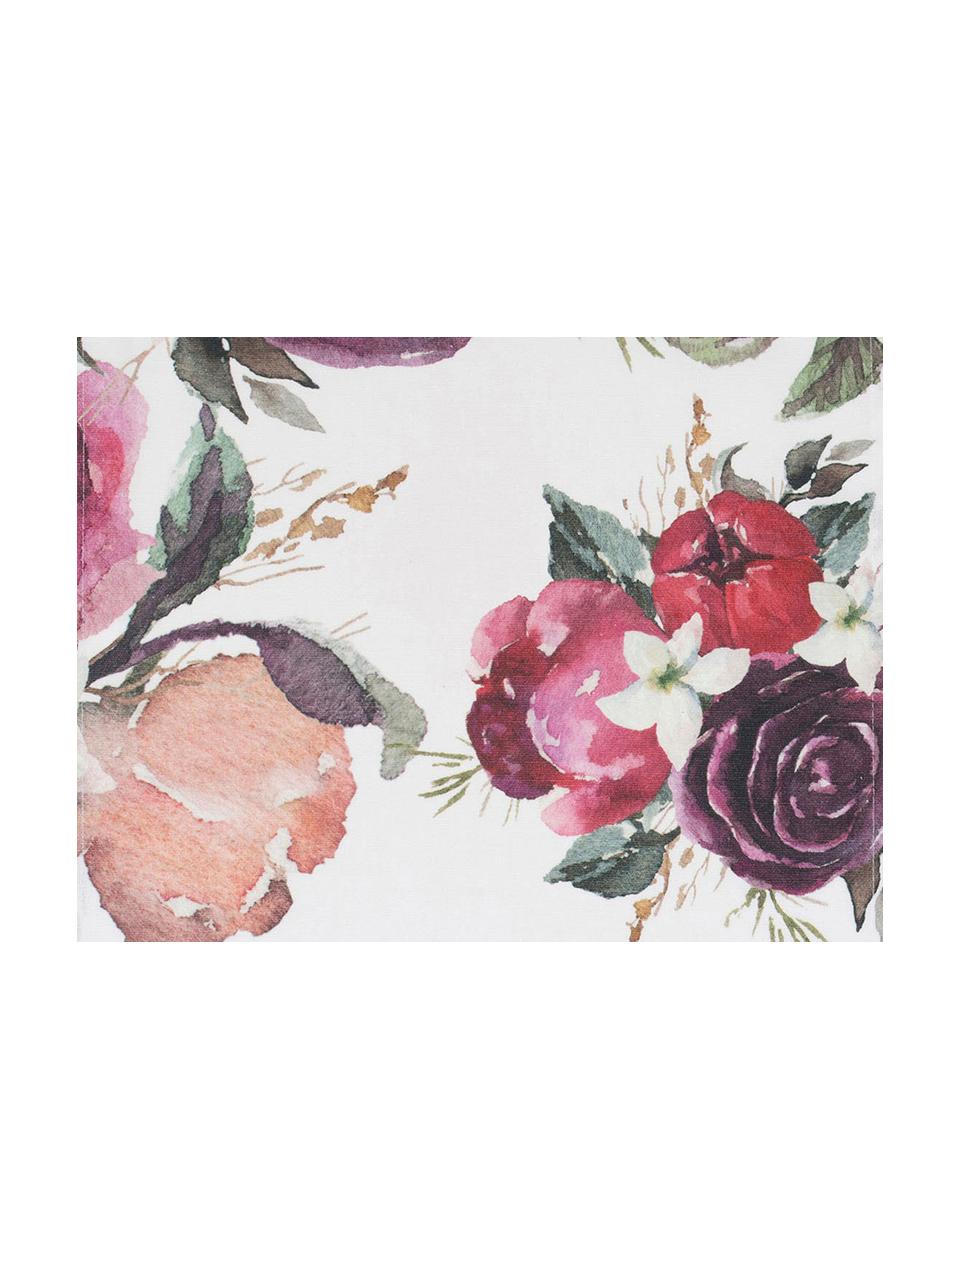 Baumwoll-Tischsets Florisia mit Blumenmuster, 2 Stück, 100% Baumwolle, Rosa, Weiß, Lila, Grün, B 38 x L 50 cm